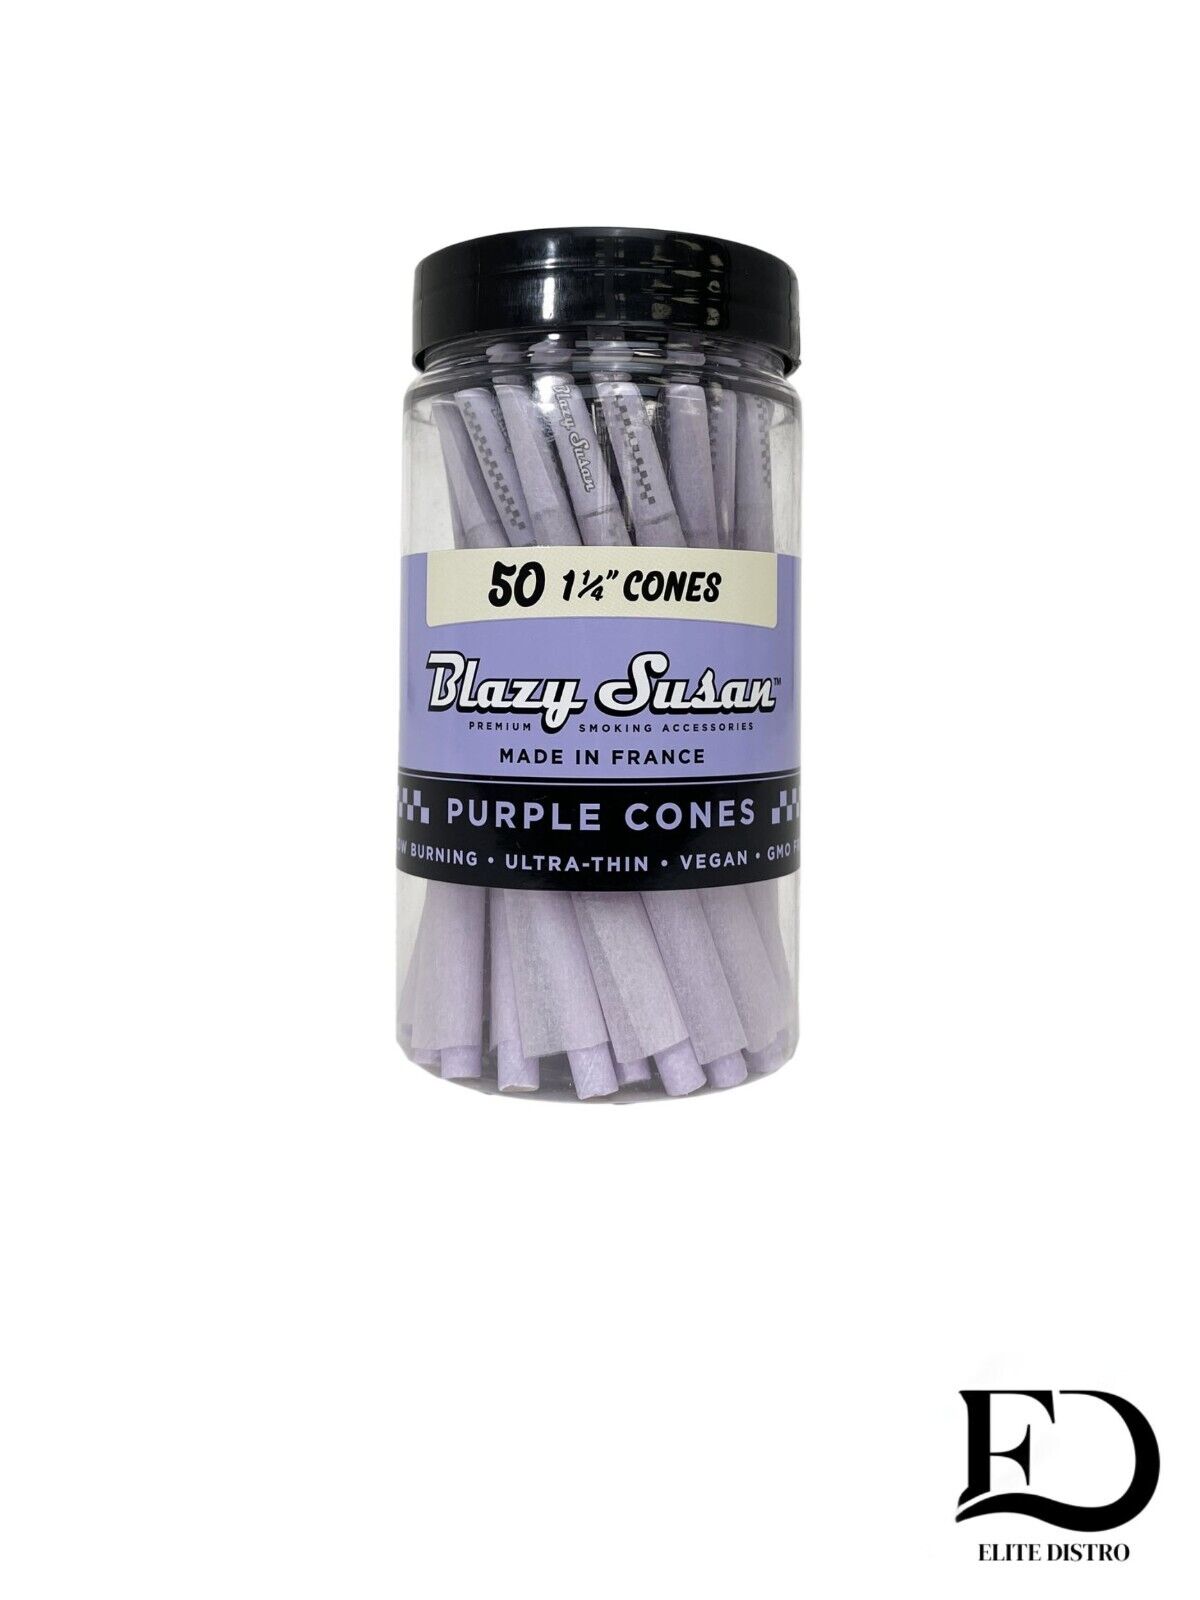 Blazy Susan Purple Cones 1 1/4 rolling paper (50ct/jar)